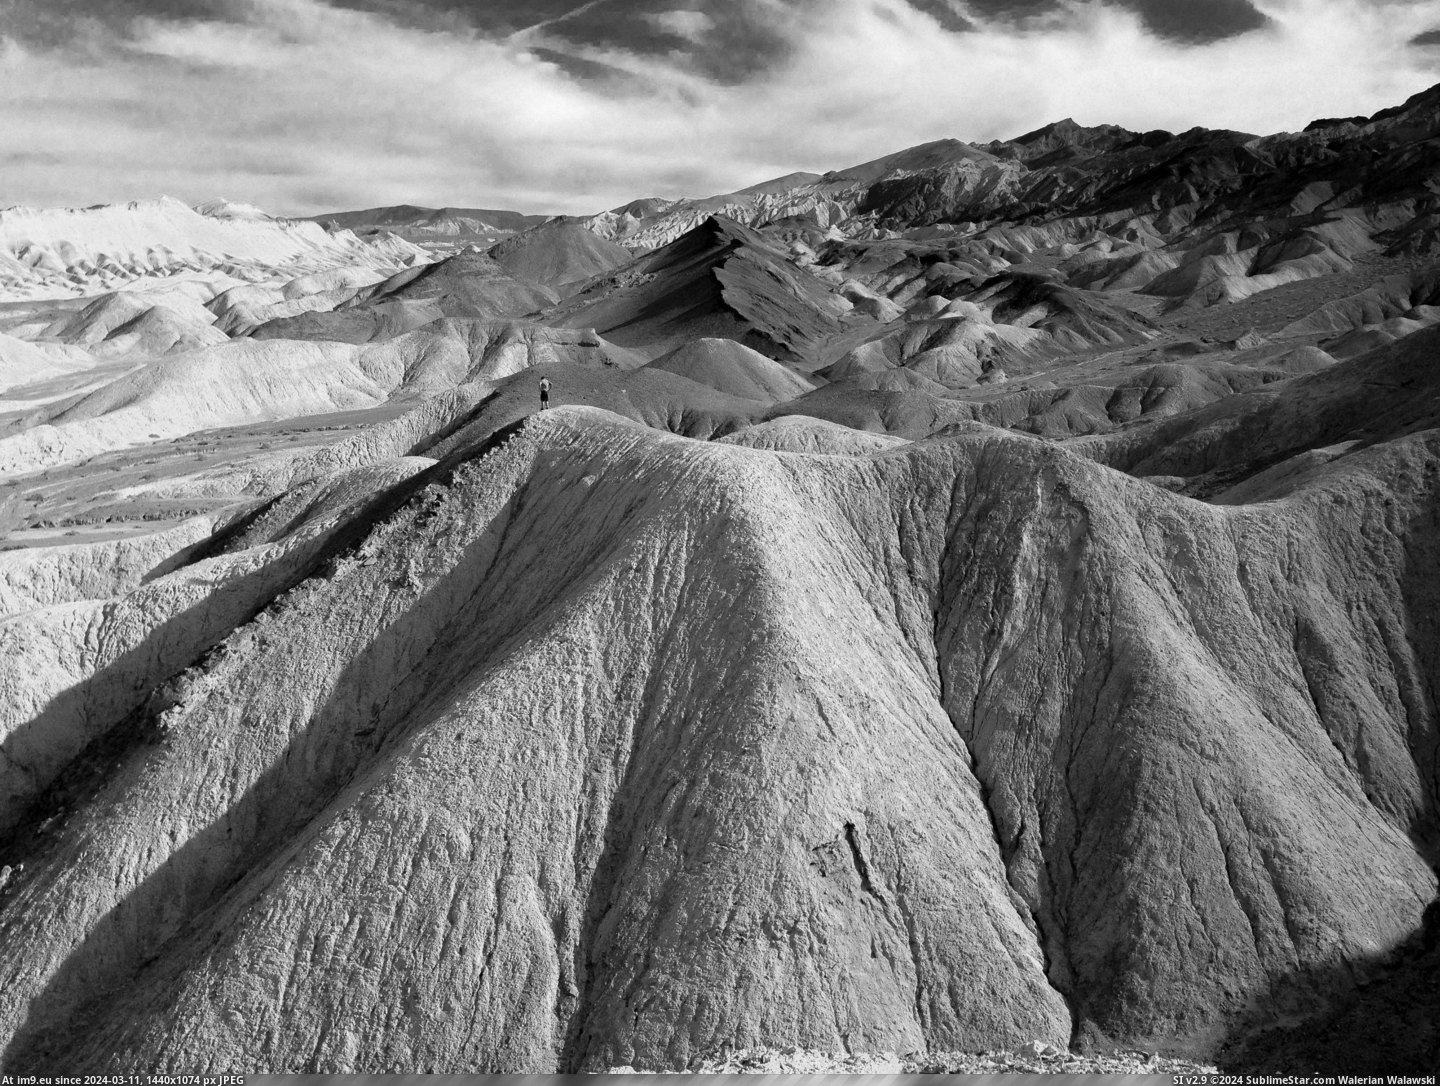 #Valley #Death #Desolation #3264x2448 #Magnificent [Earthporn] A magnificent desolation. Death Valley, CA  [3264x2448] Pic. (Bild von album My r/EARTHPORN favs))